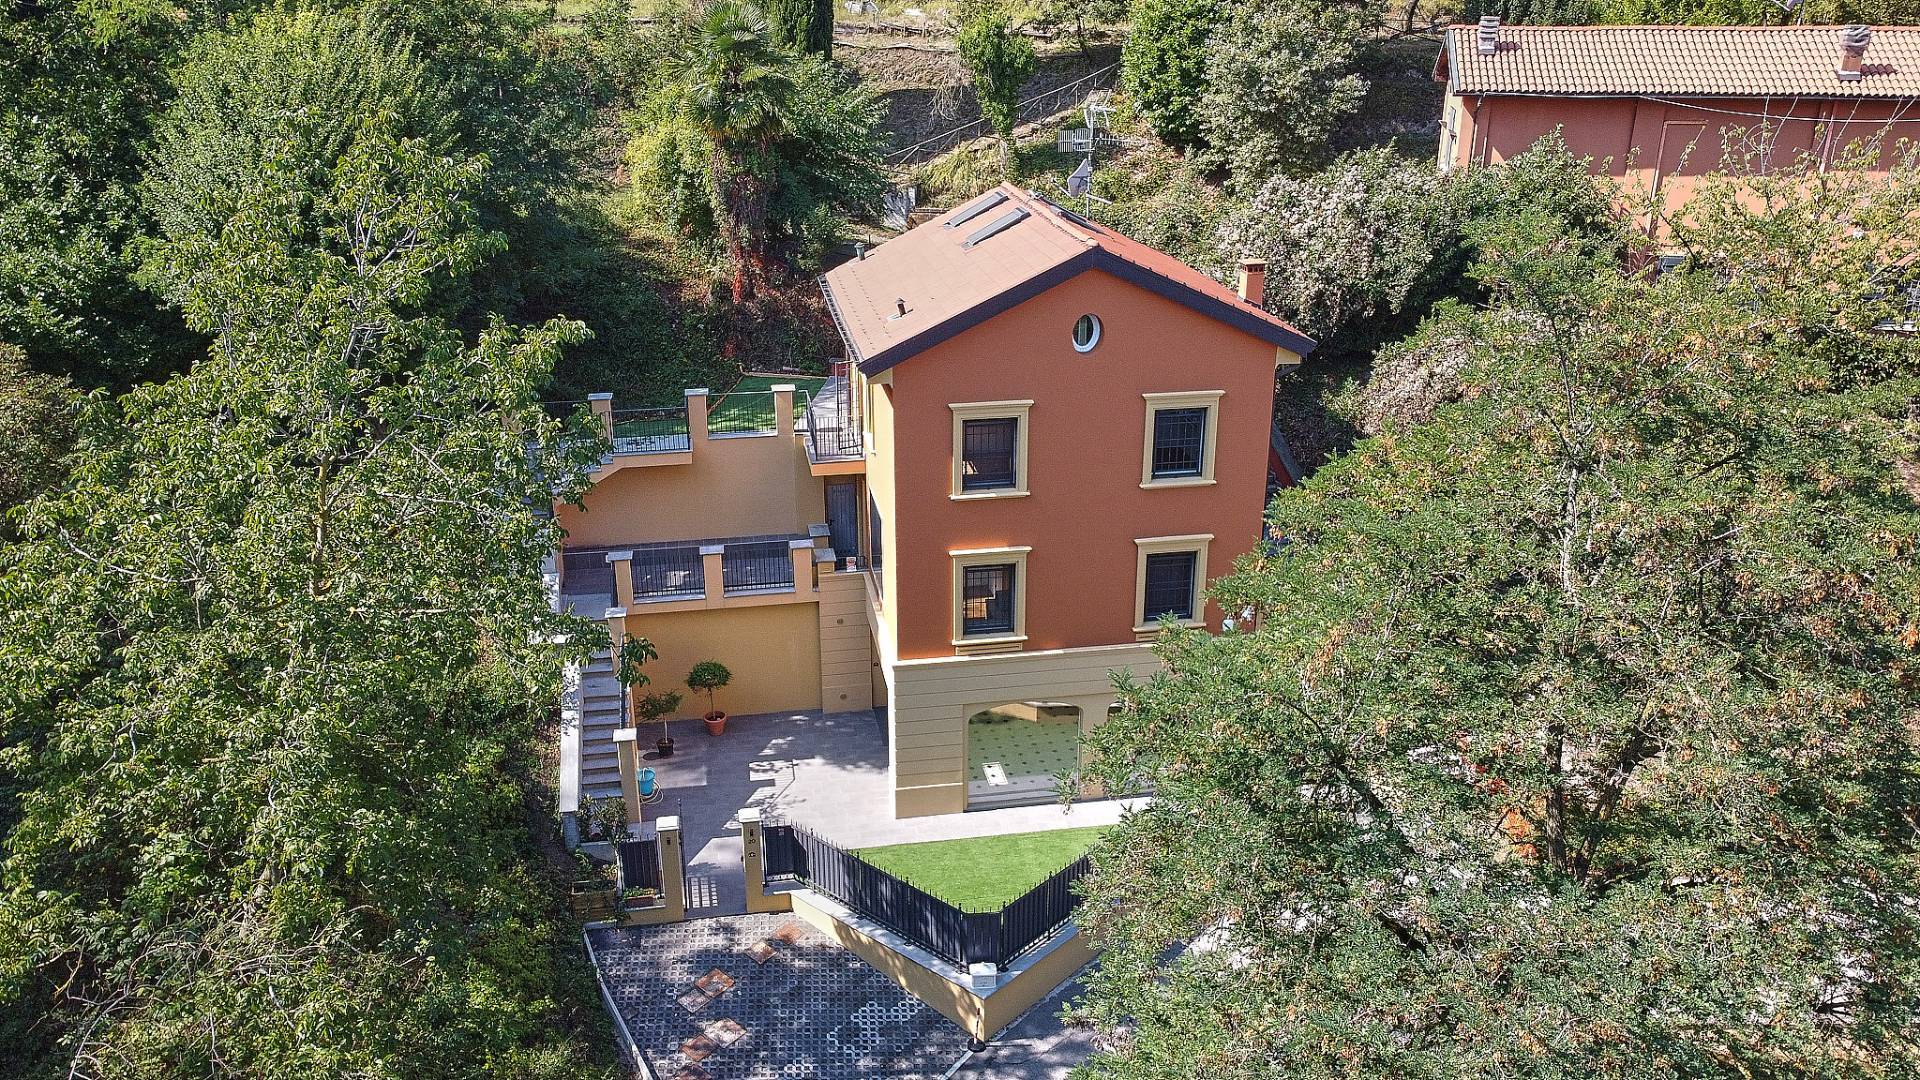 Villa in Affitto a Casalecchio Di Reno: 5 locali, 300 mq - Foto 26